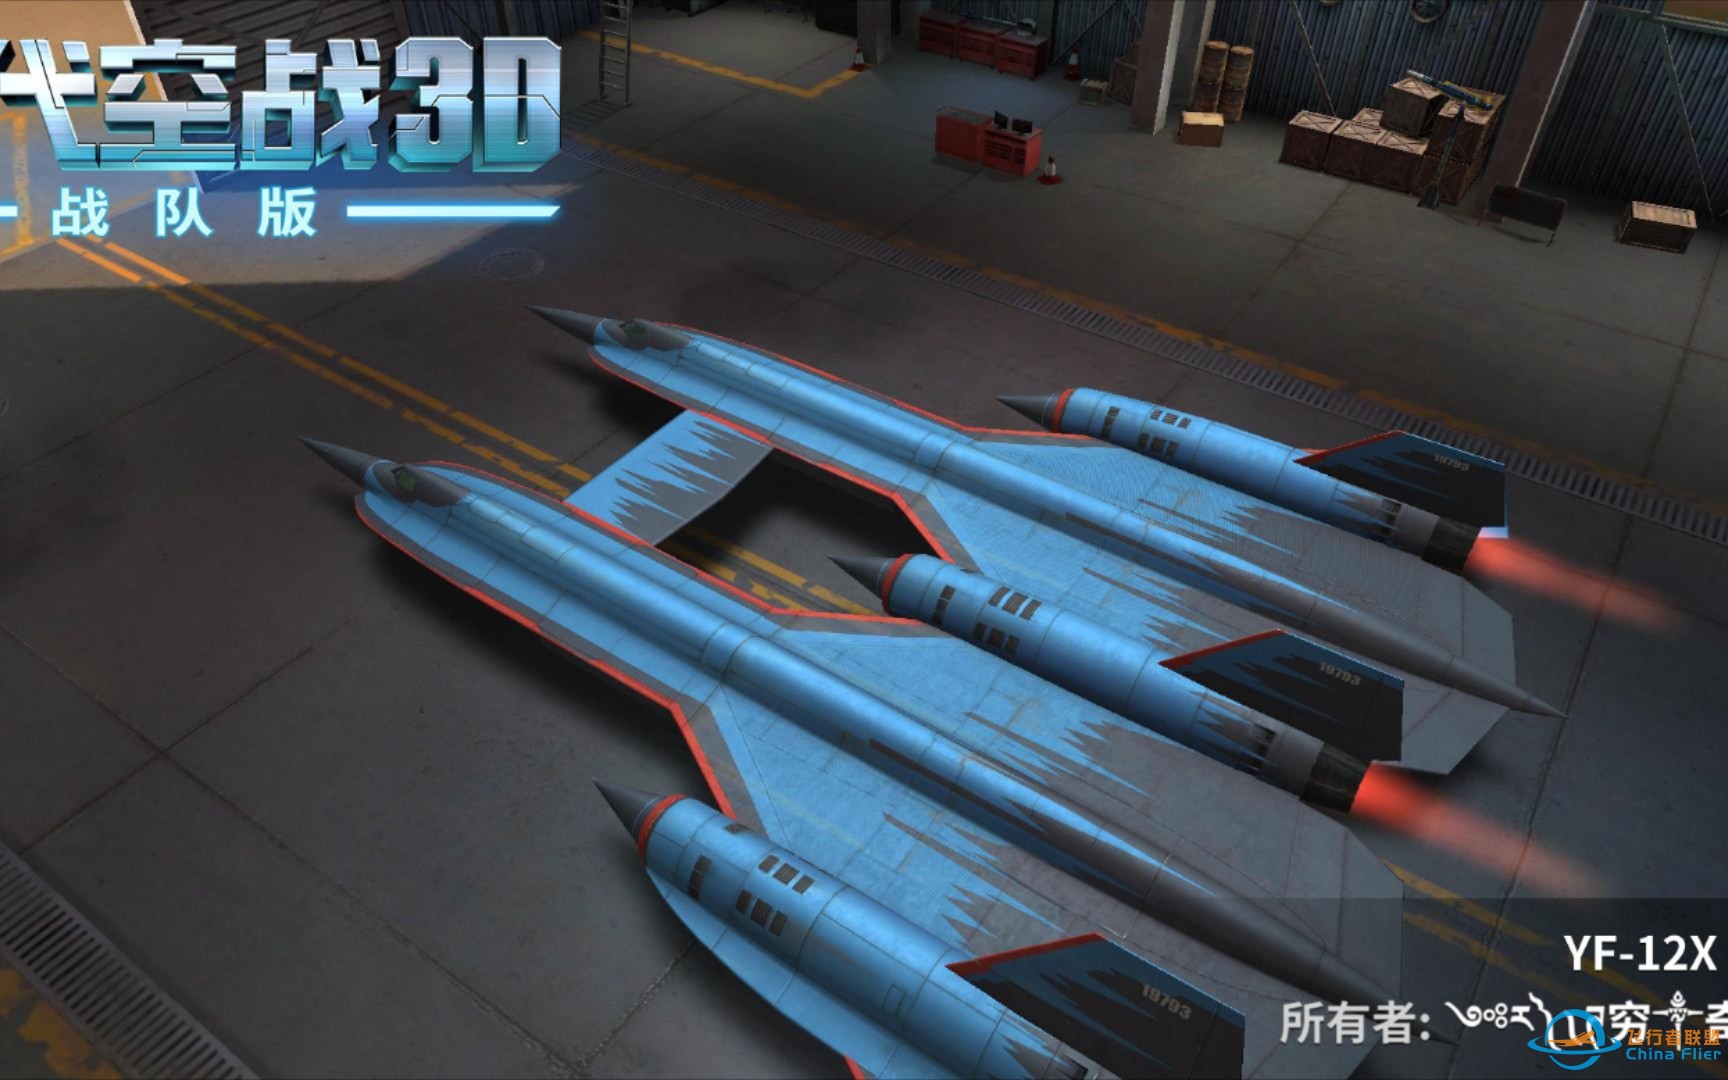 【罗辑】《现代空战3D》实战中导弹的实际伤害值究竟是多少呢-7250 